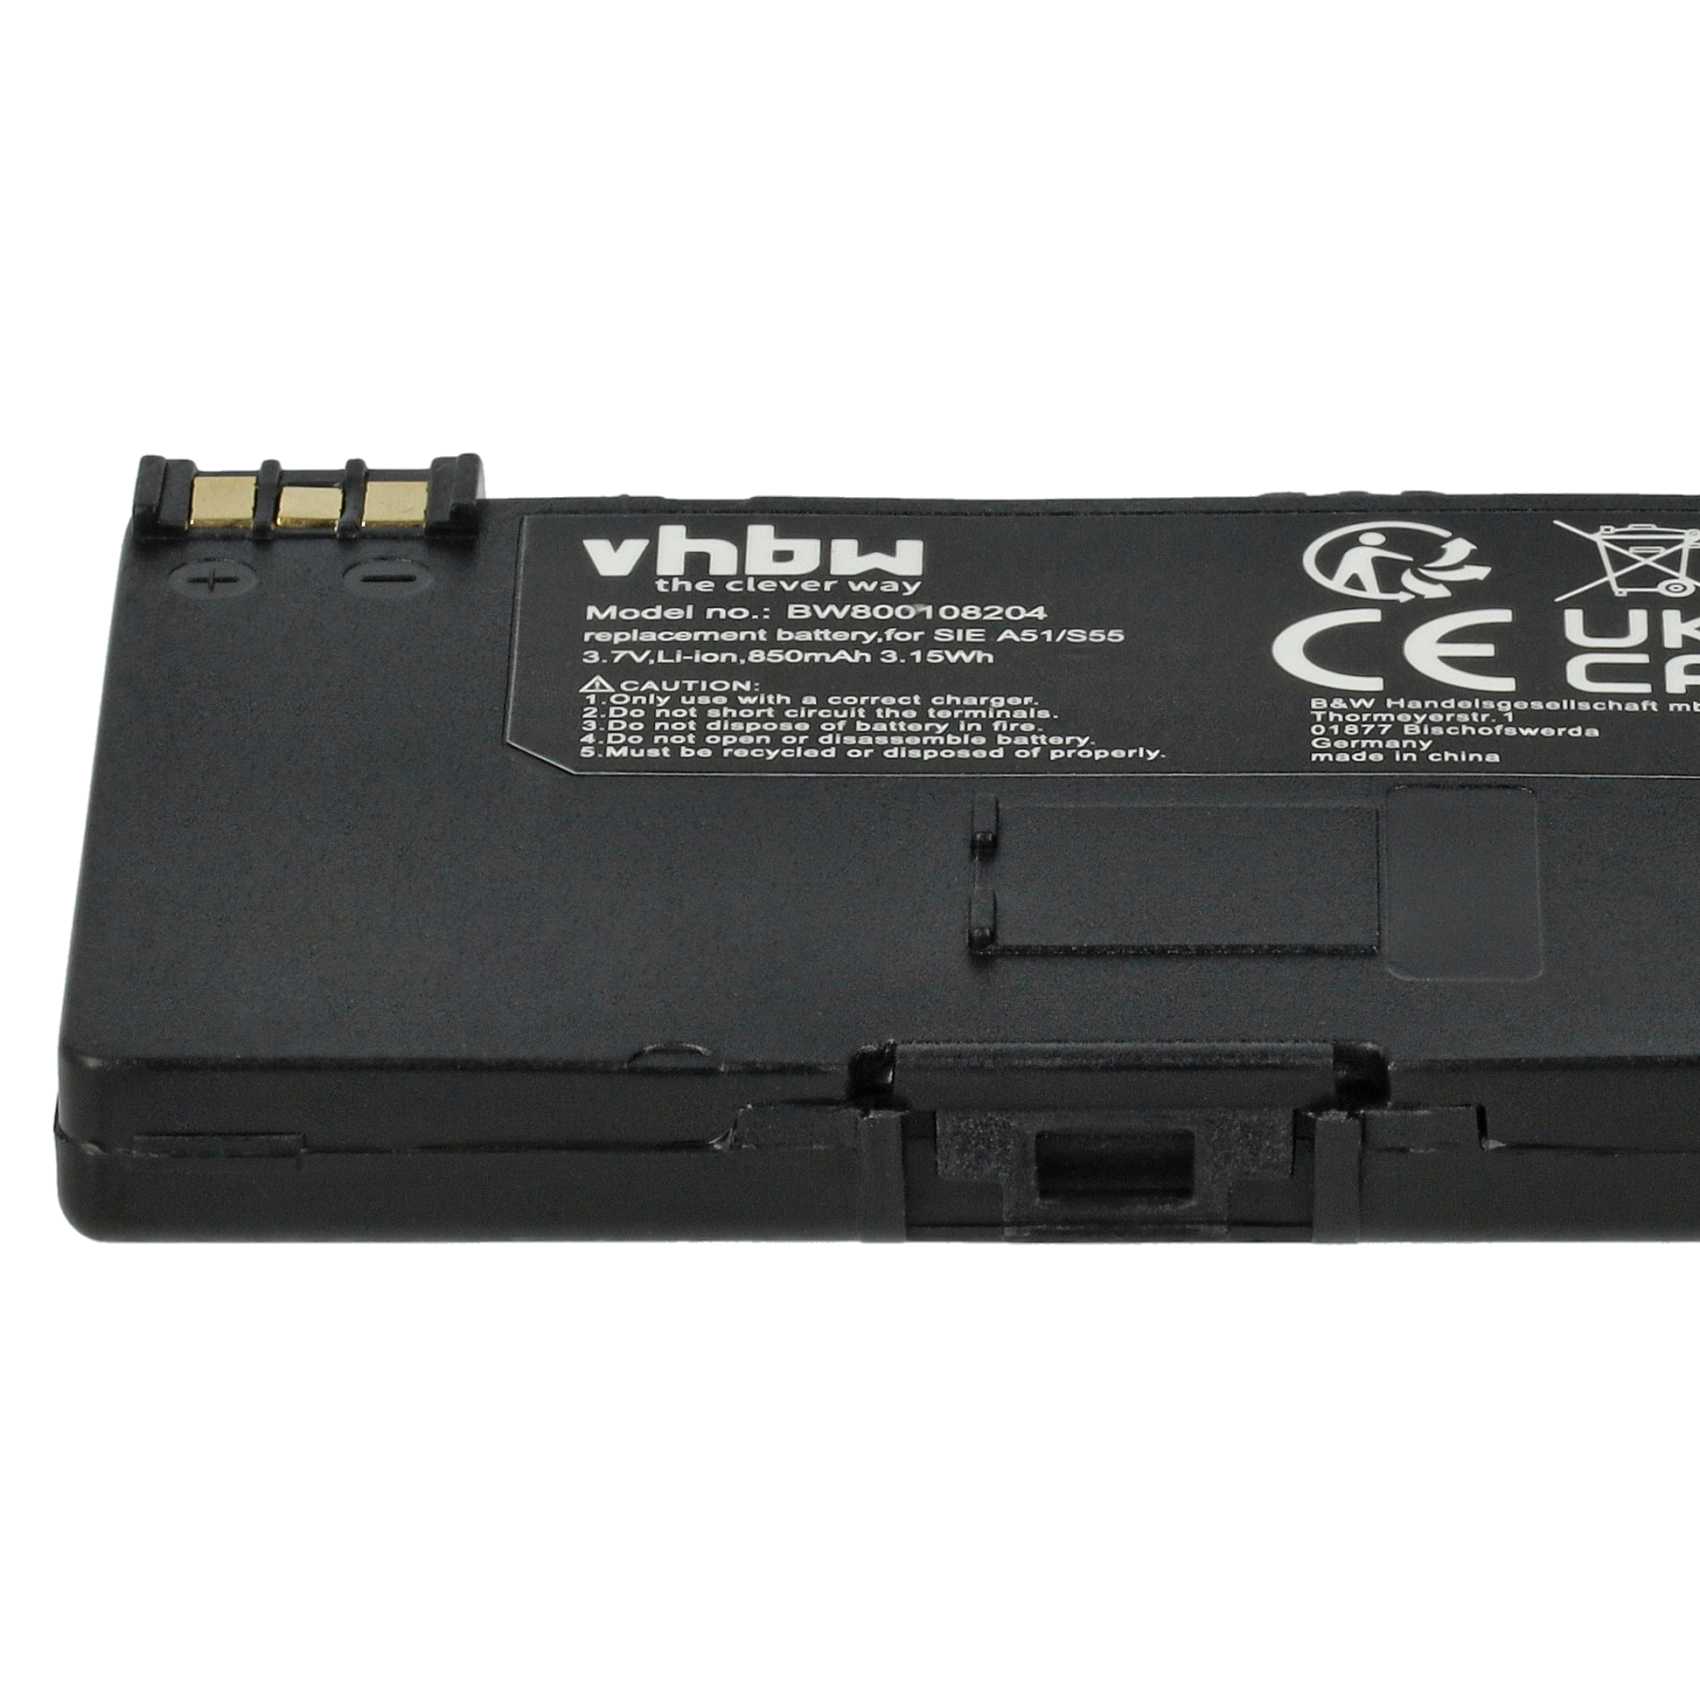 Batterie remplace EBA-510, L36880-N5601-A100, L36145-K1310-X401, BASIC56 pour téléphone - 850mAh 3,7V Li-ion